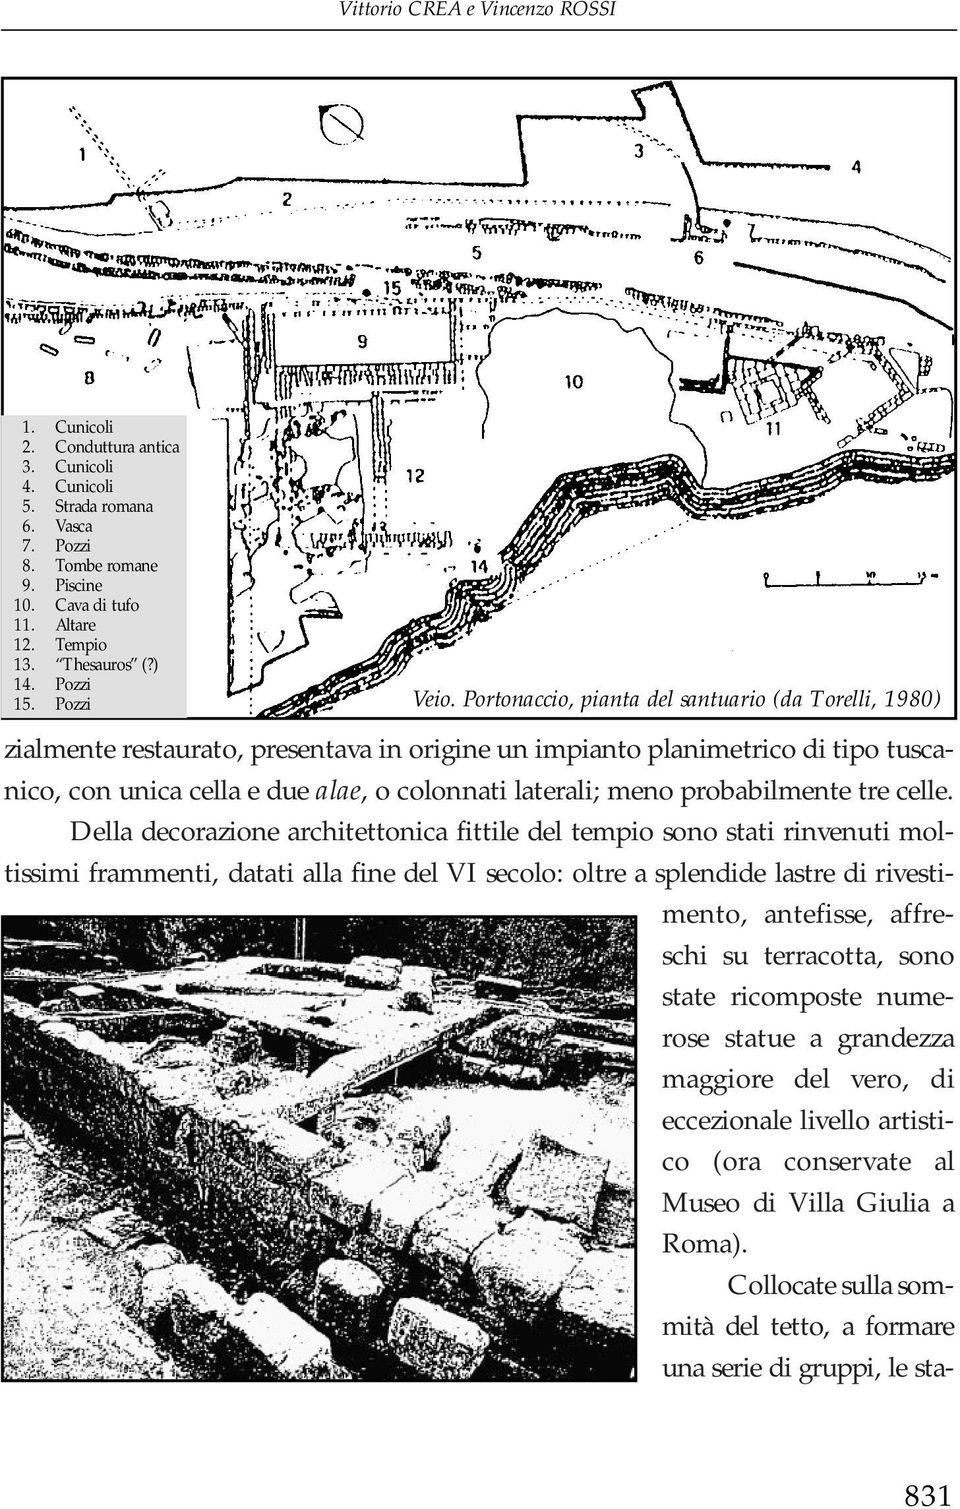 Portonaccio, pianta del santuario (da Torelli, 1980) zialmente restaurato, presentava in origine un impianto planimetrico di tipo tuscanico, con unica cella e due alae, o colonnati laterali; meno